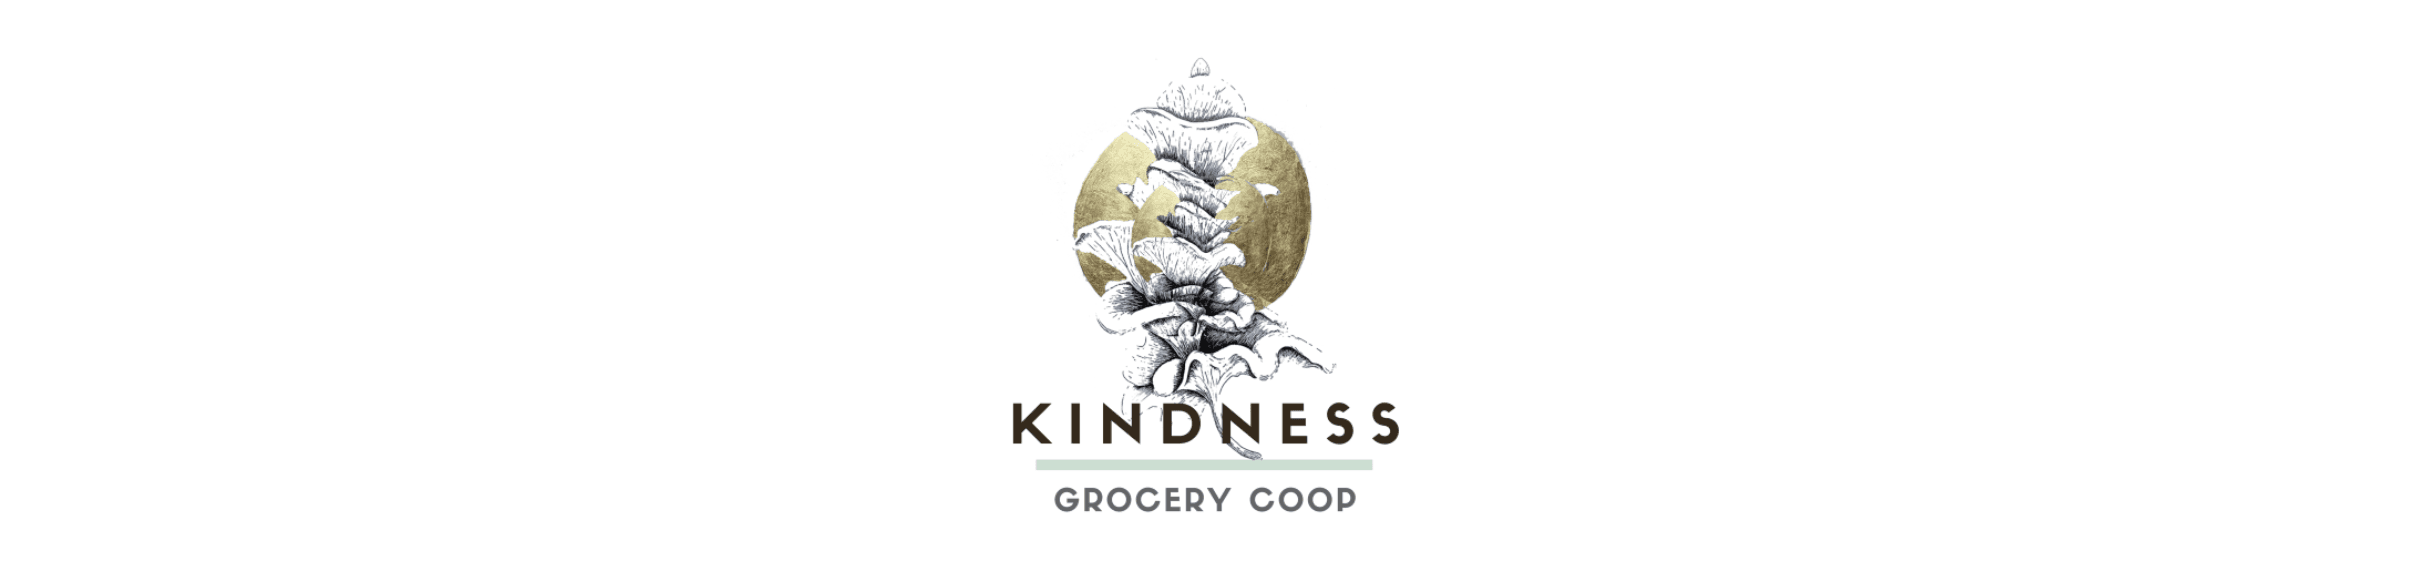 Kindnessgrocerycoop2021 bannière